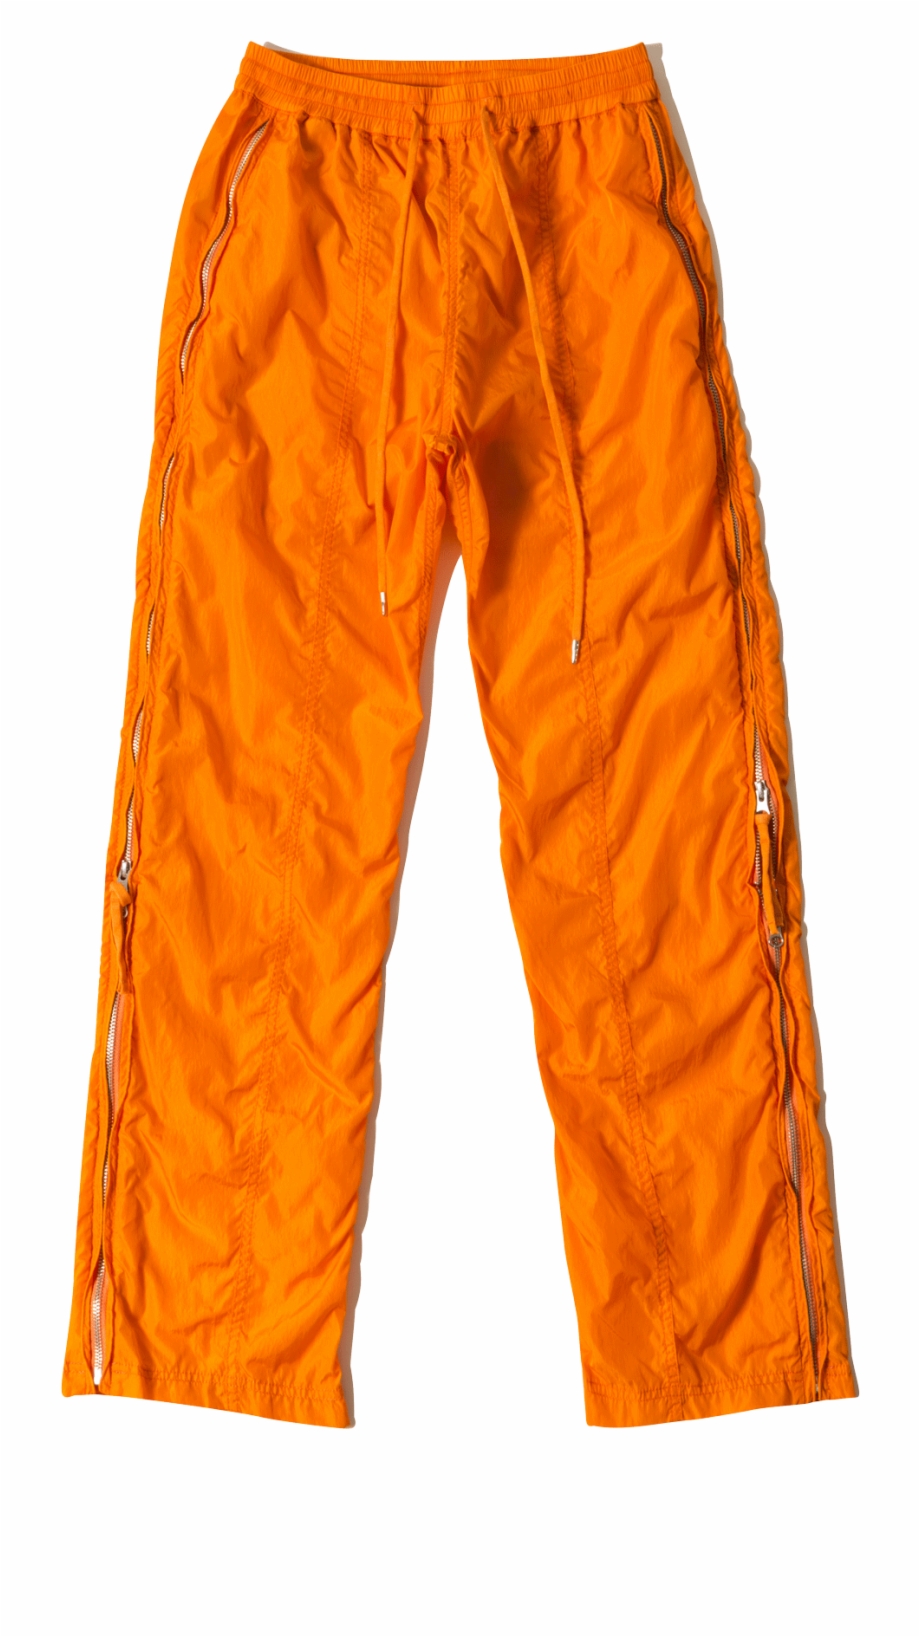 pants clipart orange pants